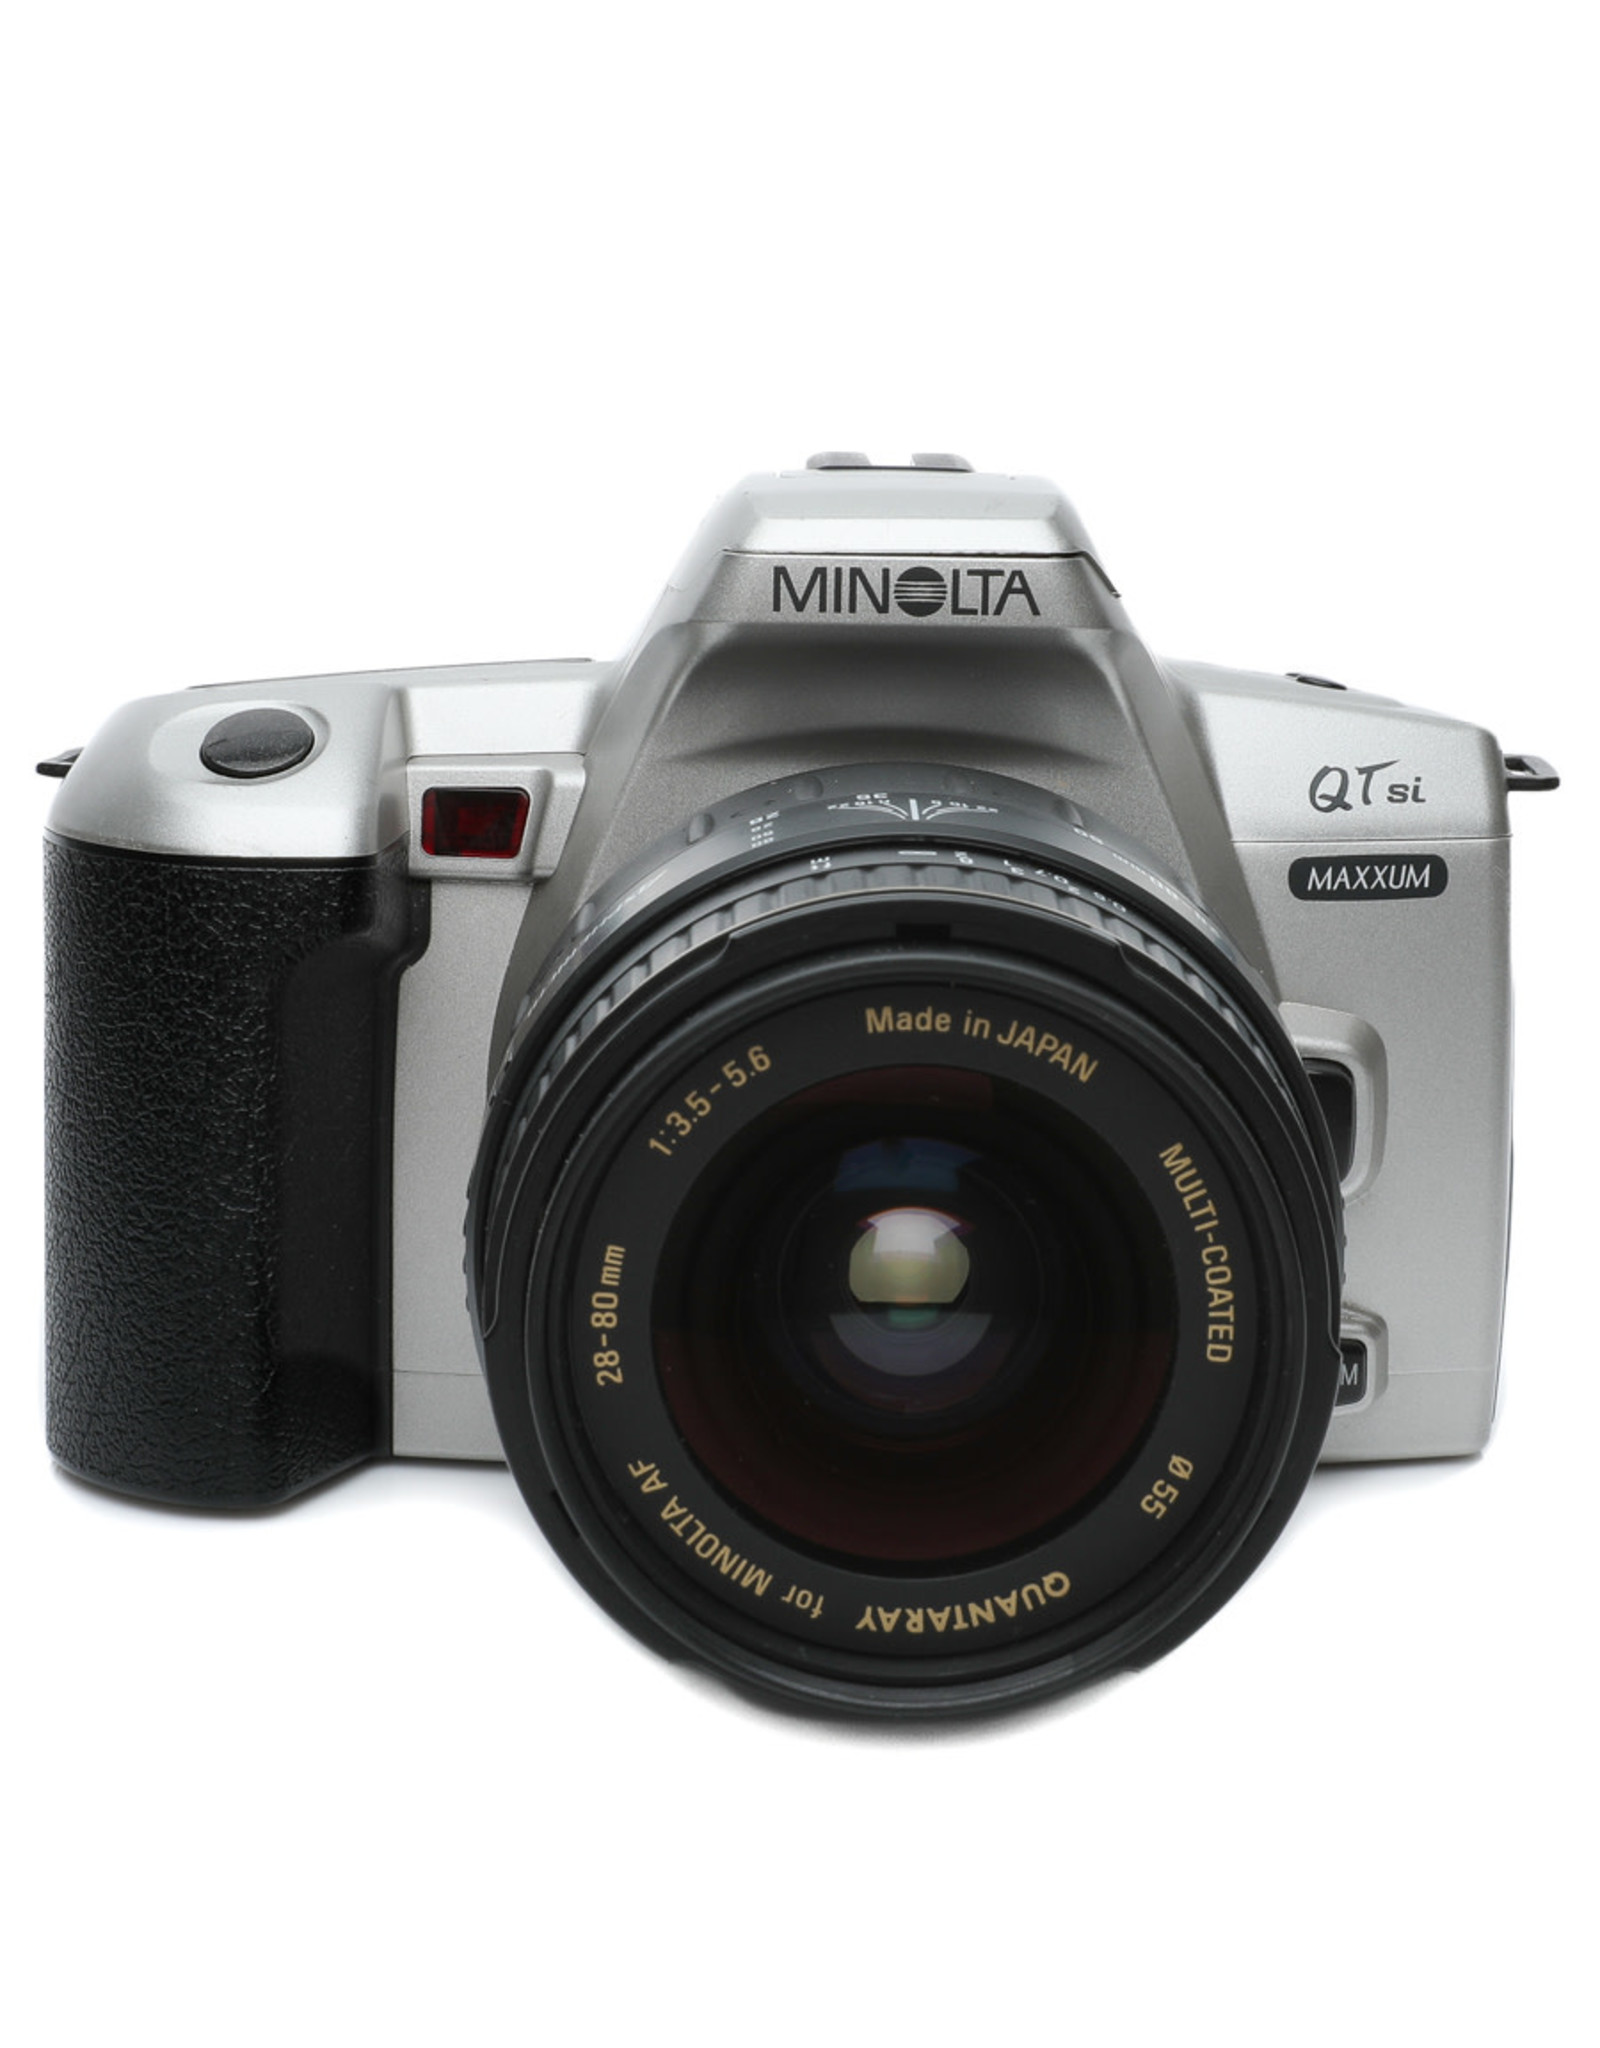 Minolta Minolta Maxxum QTsi w/28-80 AF Lens Semester Rental